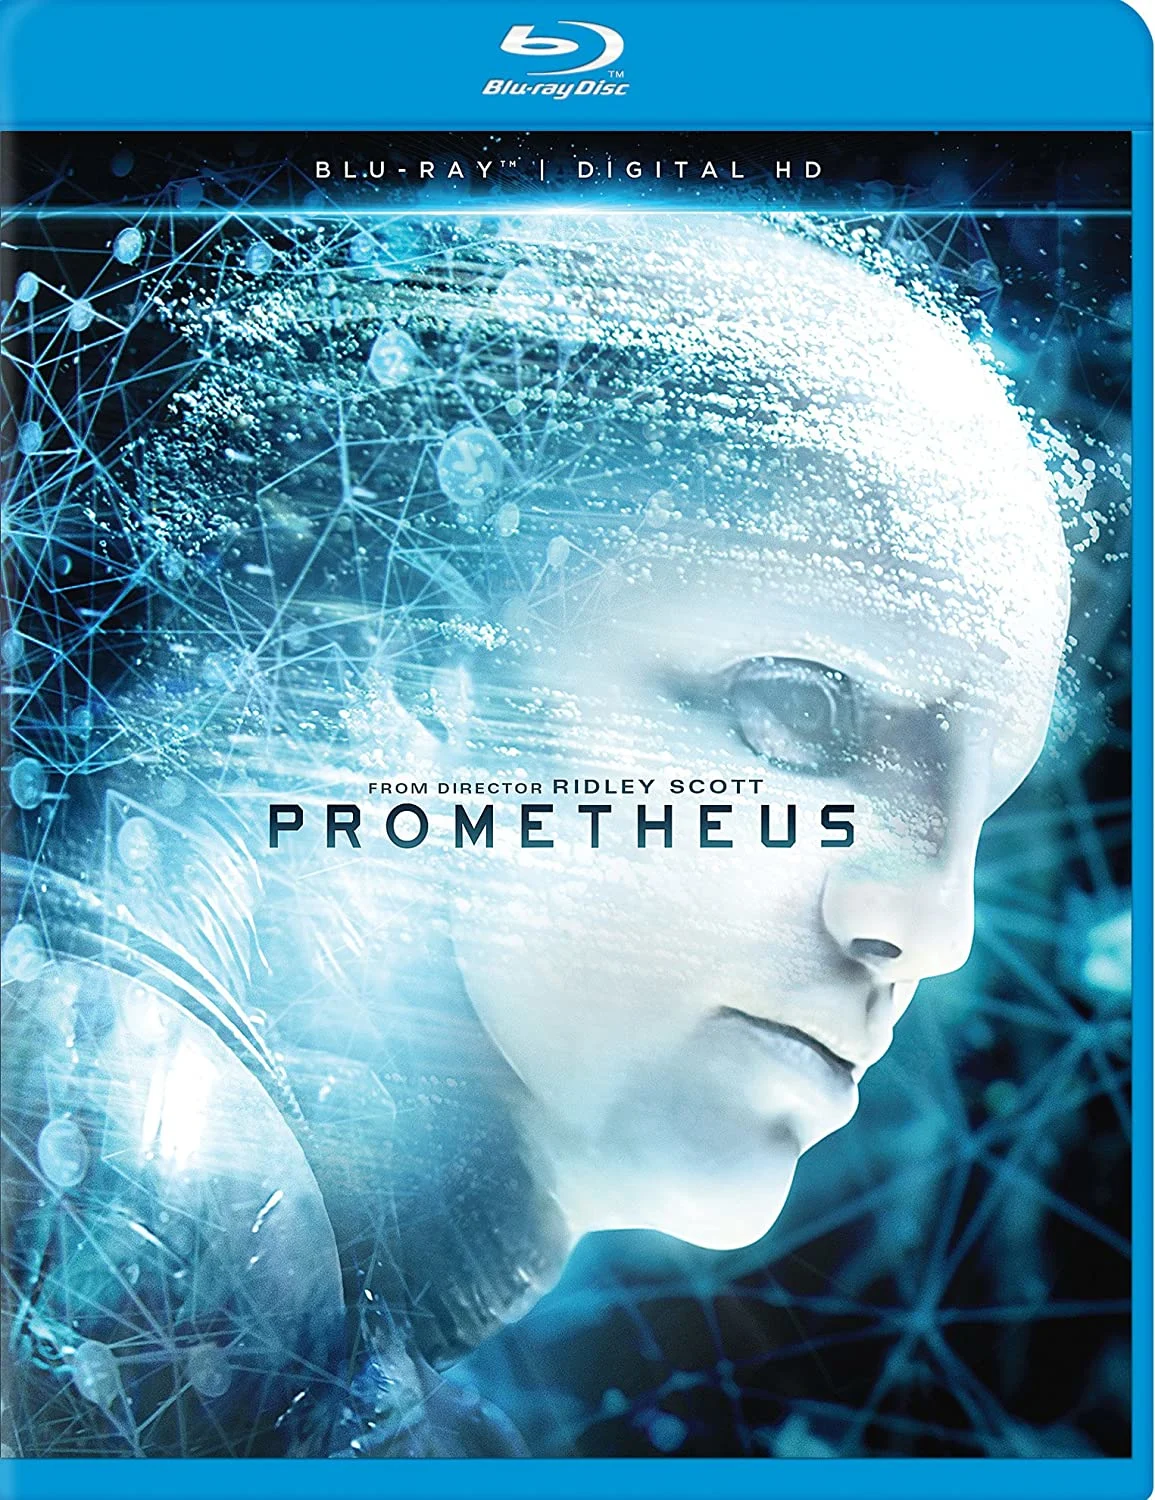 Prometheus (Blu-ray) on MovieShack